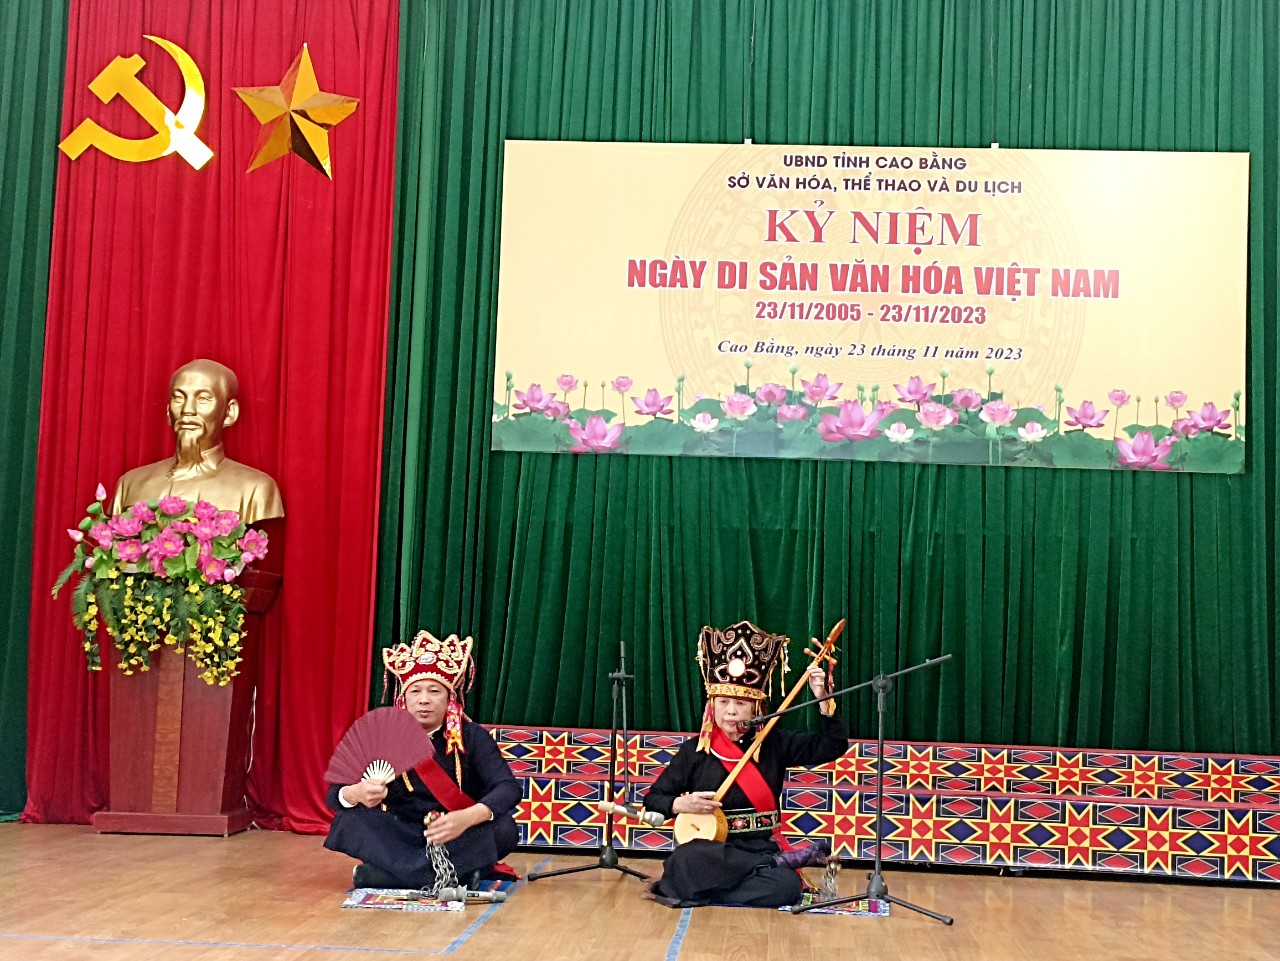 Sở VHTTDL tỉnh Cao Bằng tổ chức kỷ niệm Ngày Di sản Văn hóa Việt Nam